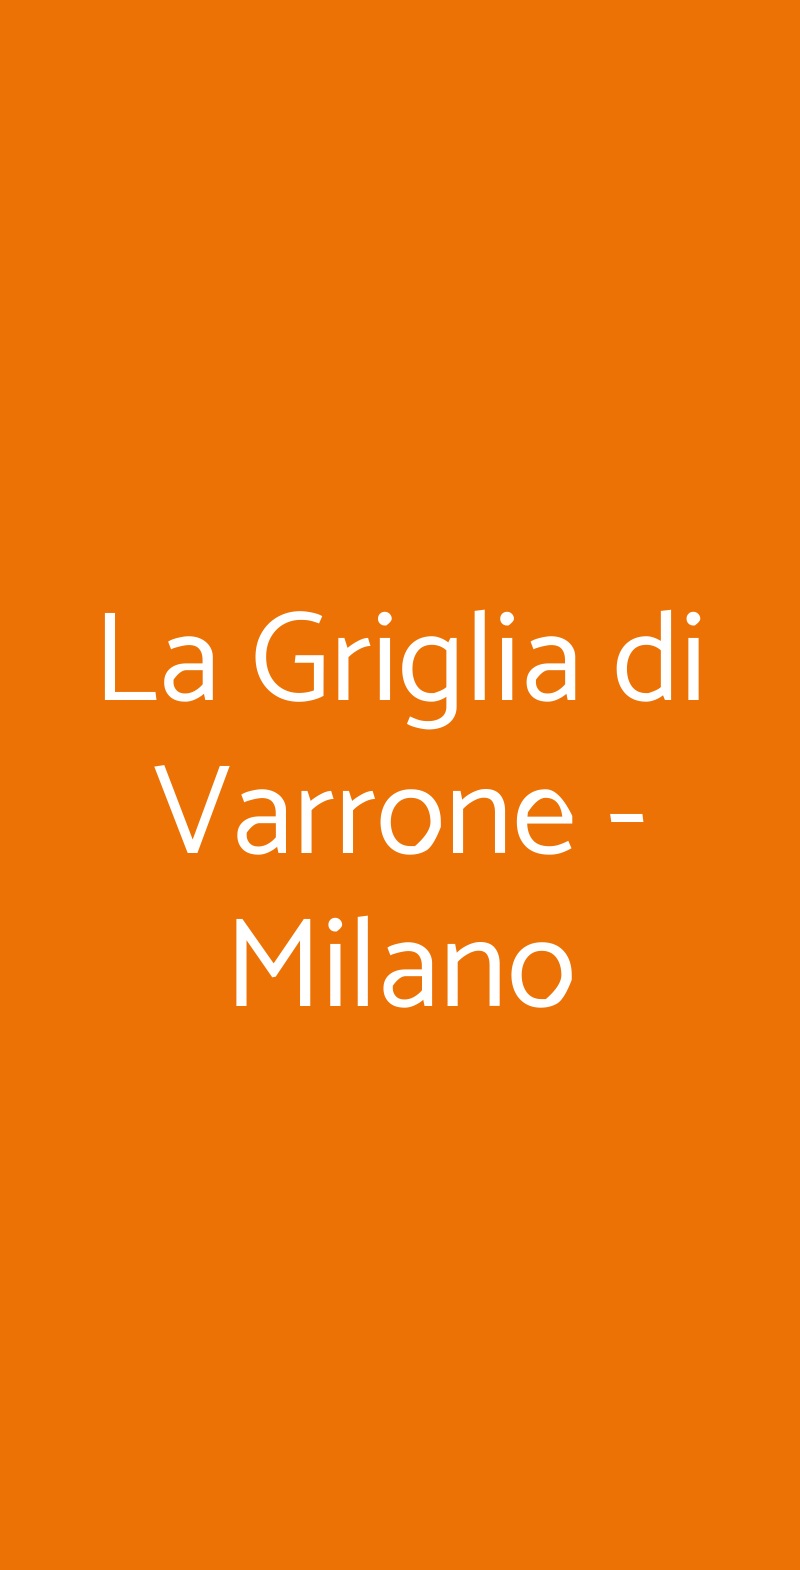 La Griglia di Varrone - Milano Milano menù 1 pagina